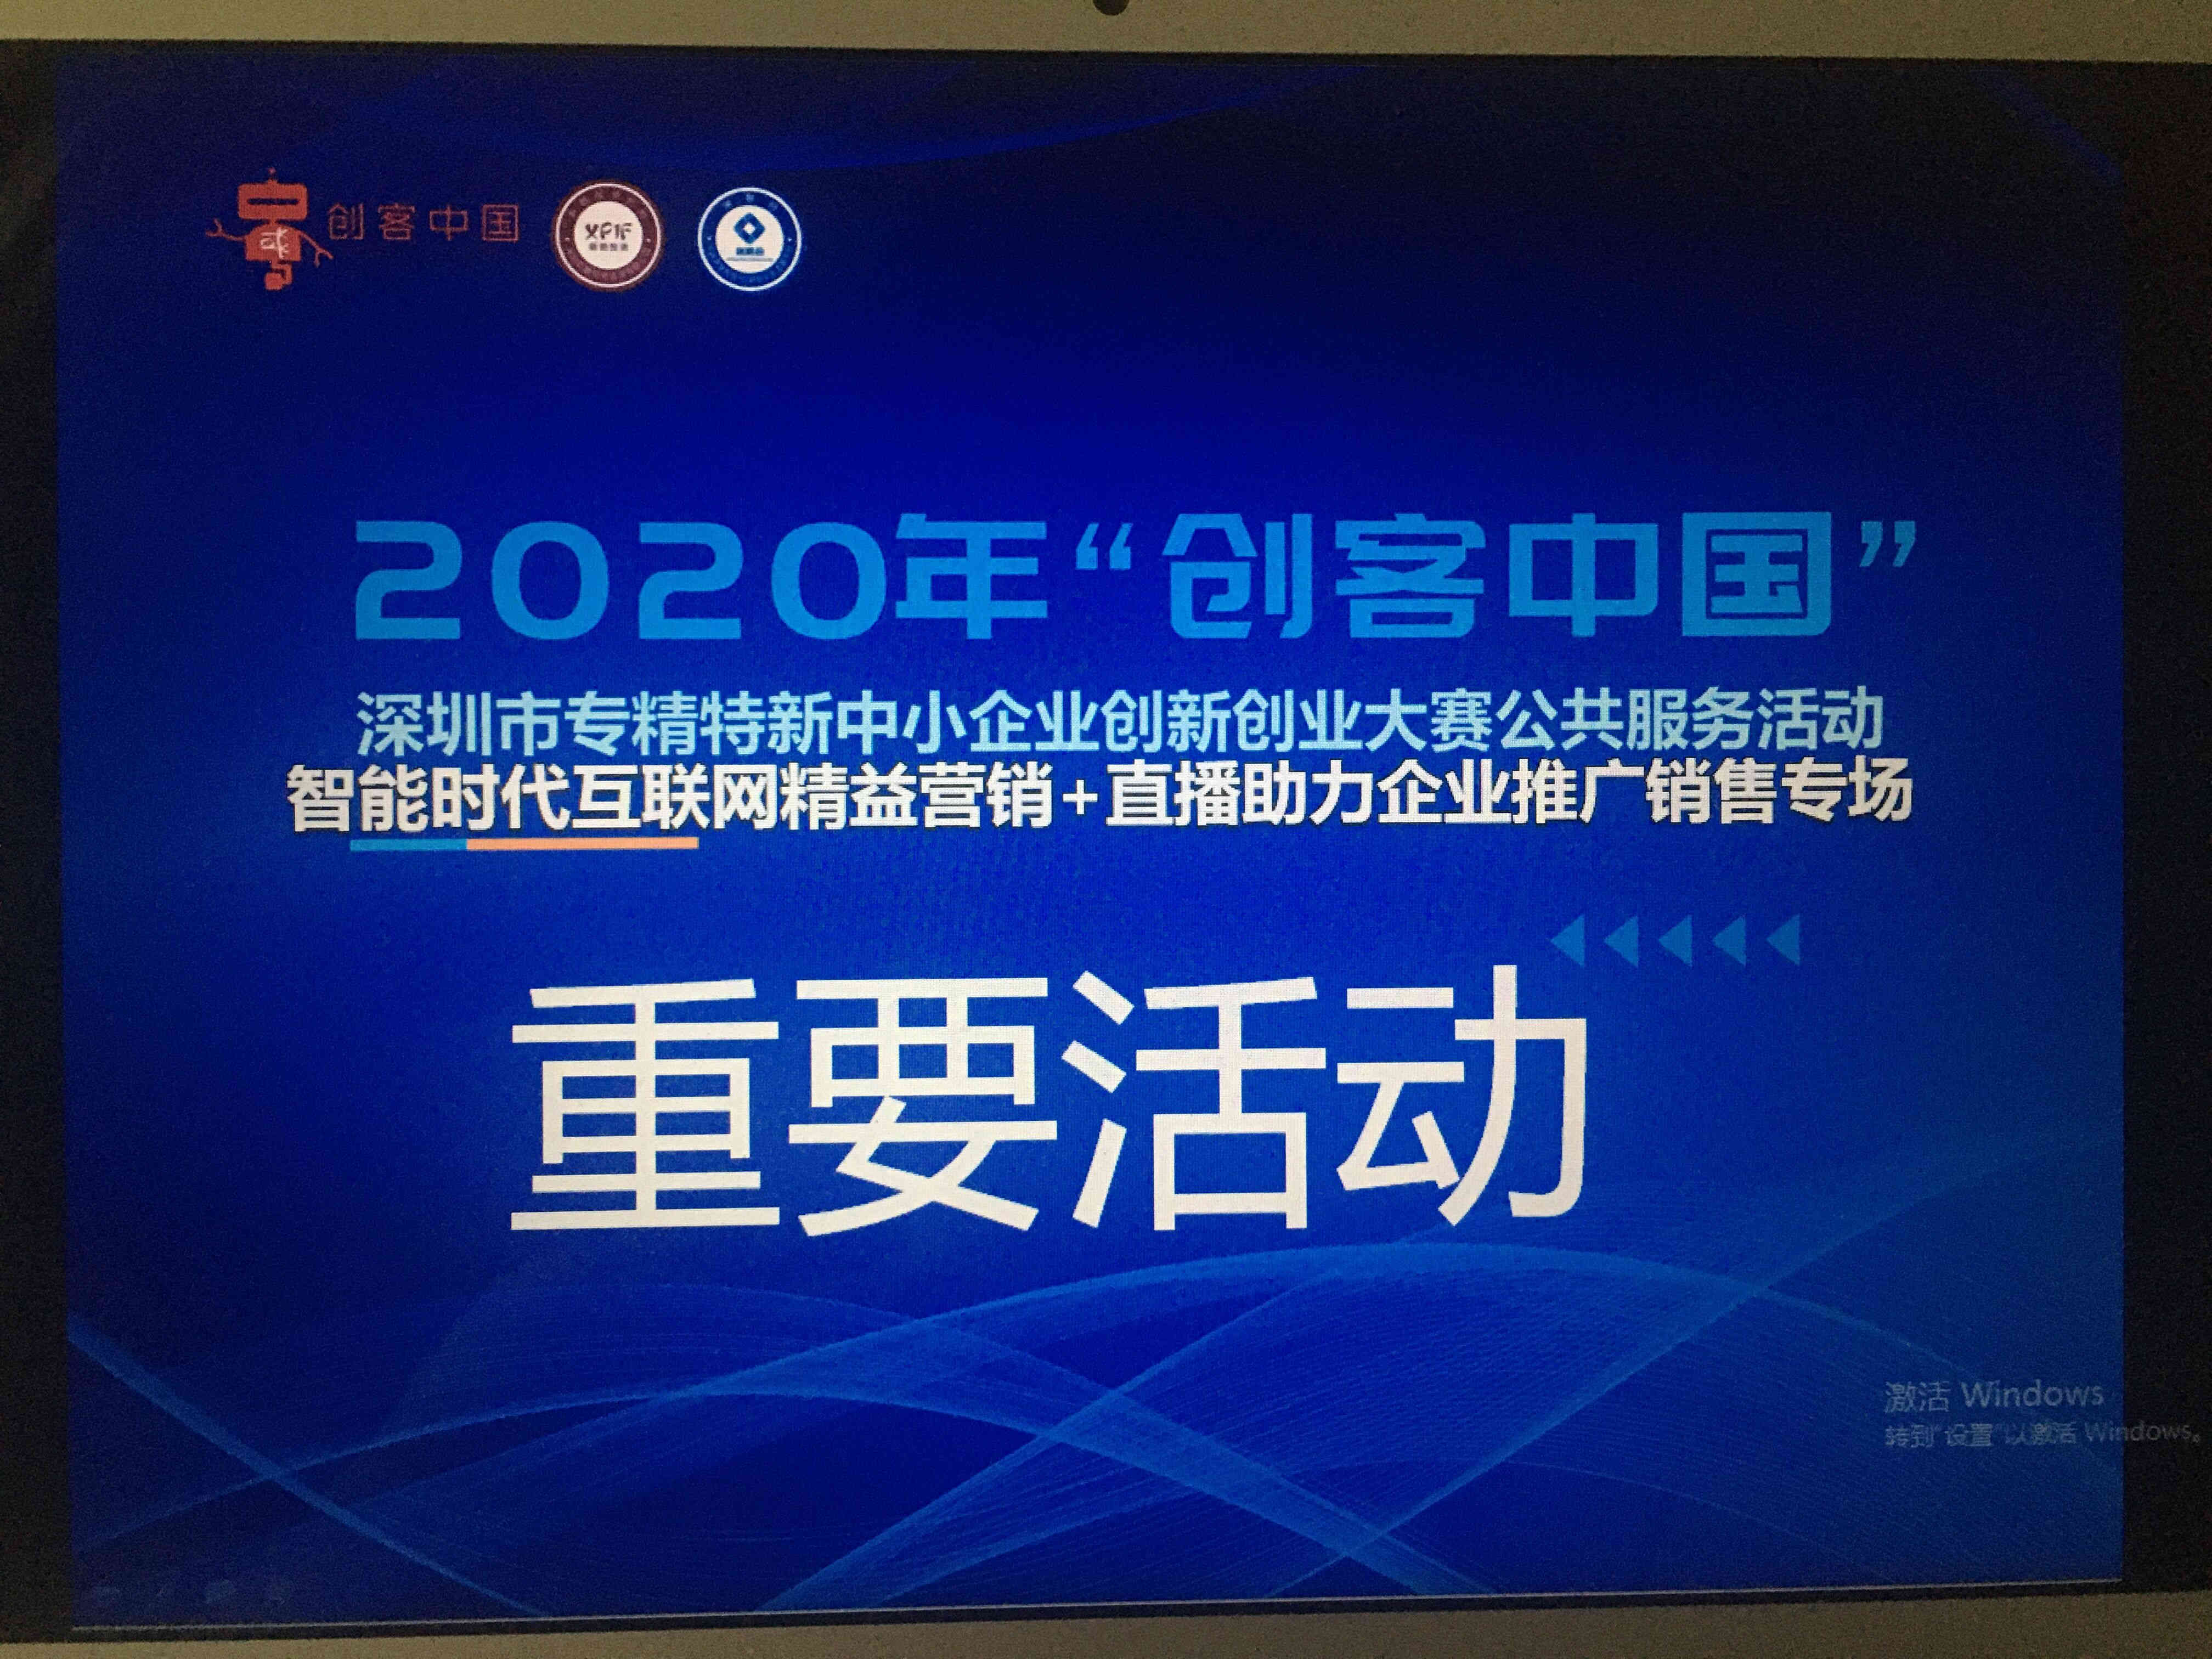 简讯 ∣ 泰燃智能参加2020年“创客中国”深圳市中小企业创新创业大赛赛前培训